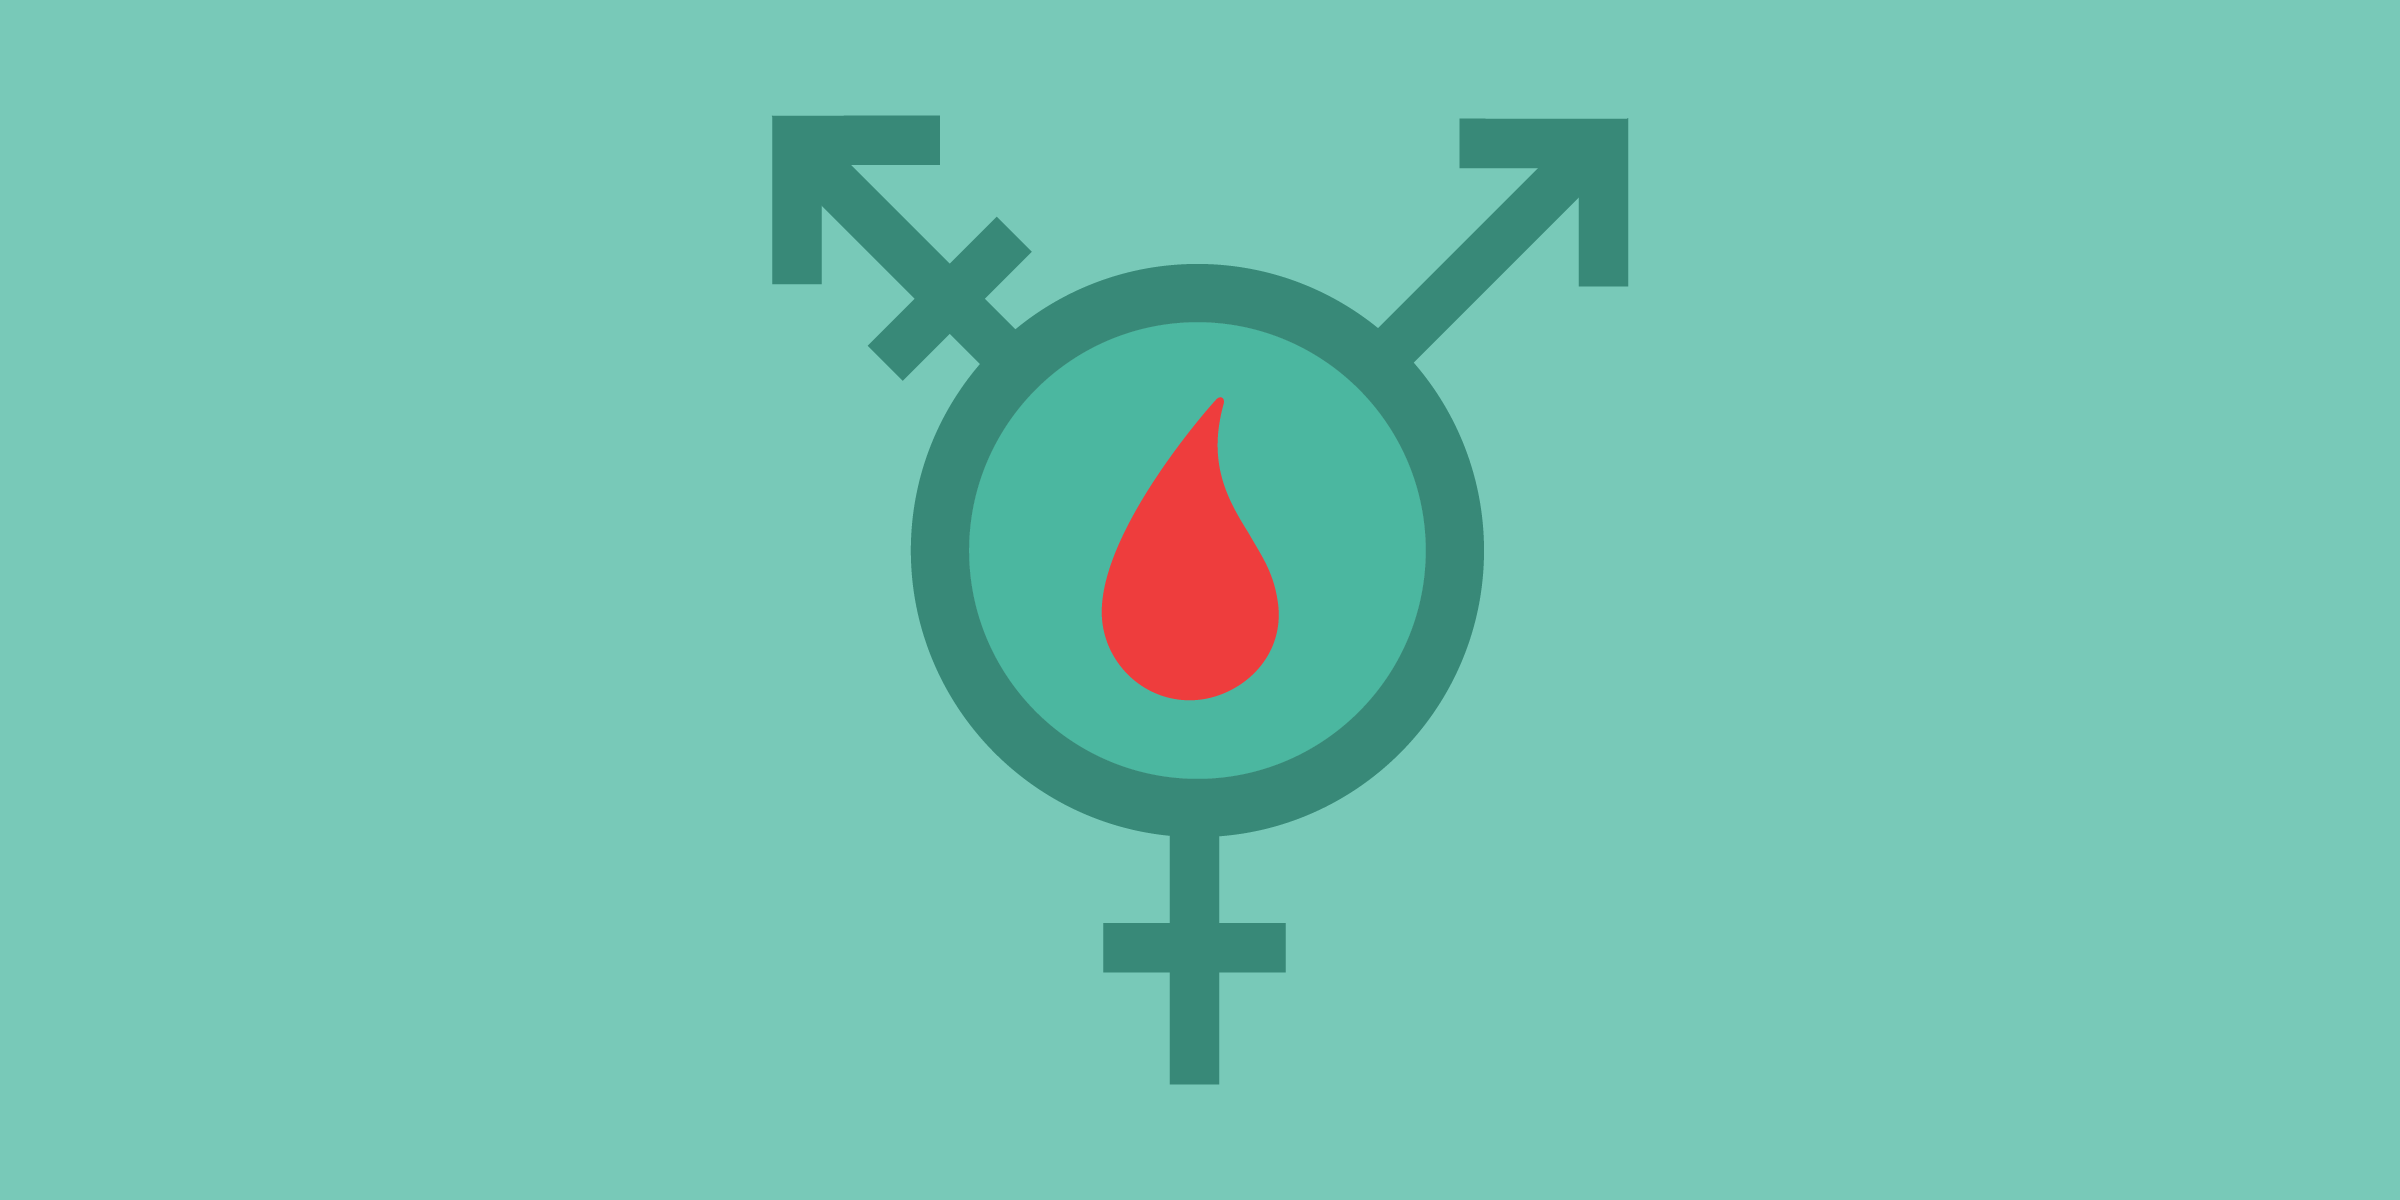 das Transgender-Symbol in Blaugrün mit einem roten Blutstropfen in der Mitte des Kreises